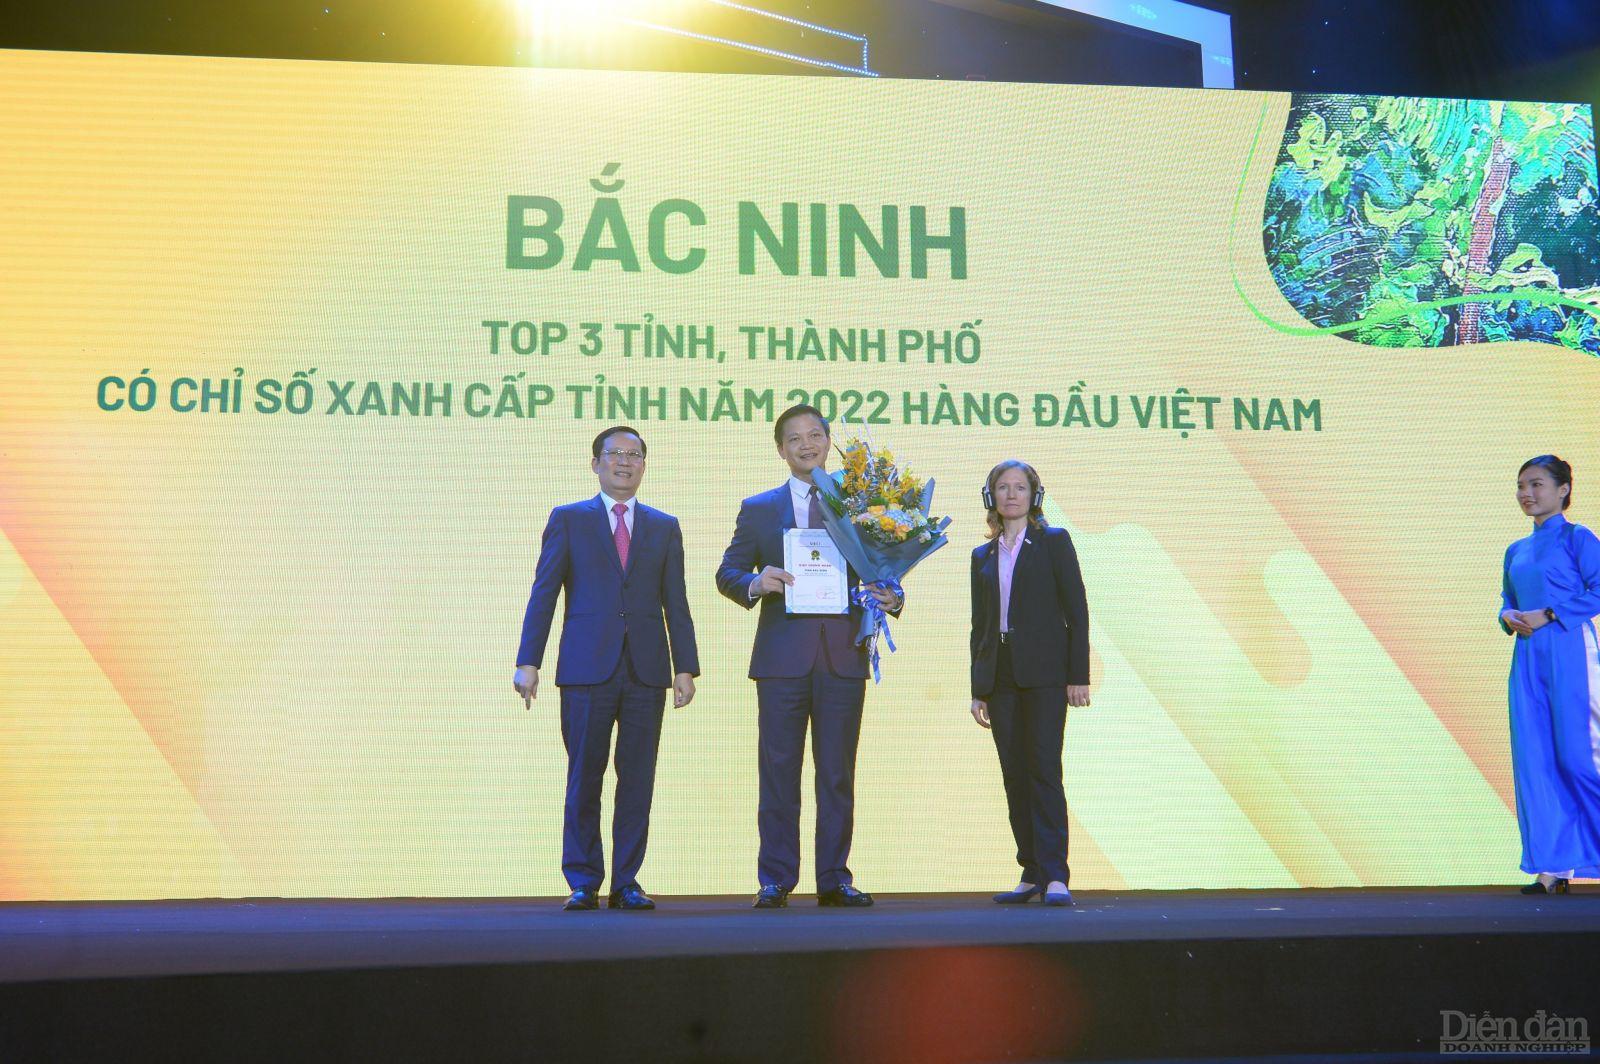 Ông Vương Quốc Tuấn – Phó Chủ tịch thường trực UBND tỉnh Bắc Ninh nhận kỷ niệm chương của VCCI đối với những địa phương Top 10 PCI cả nước